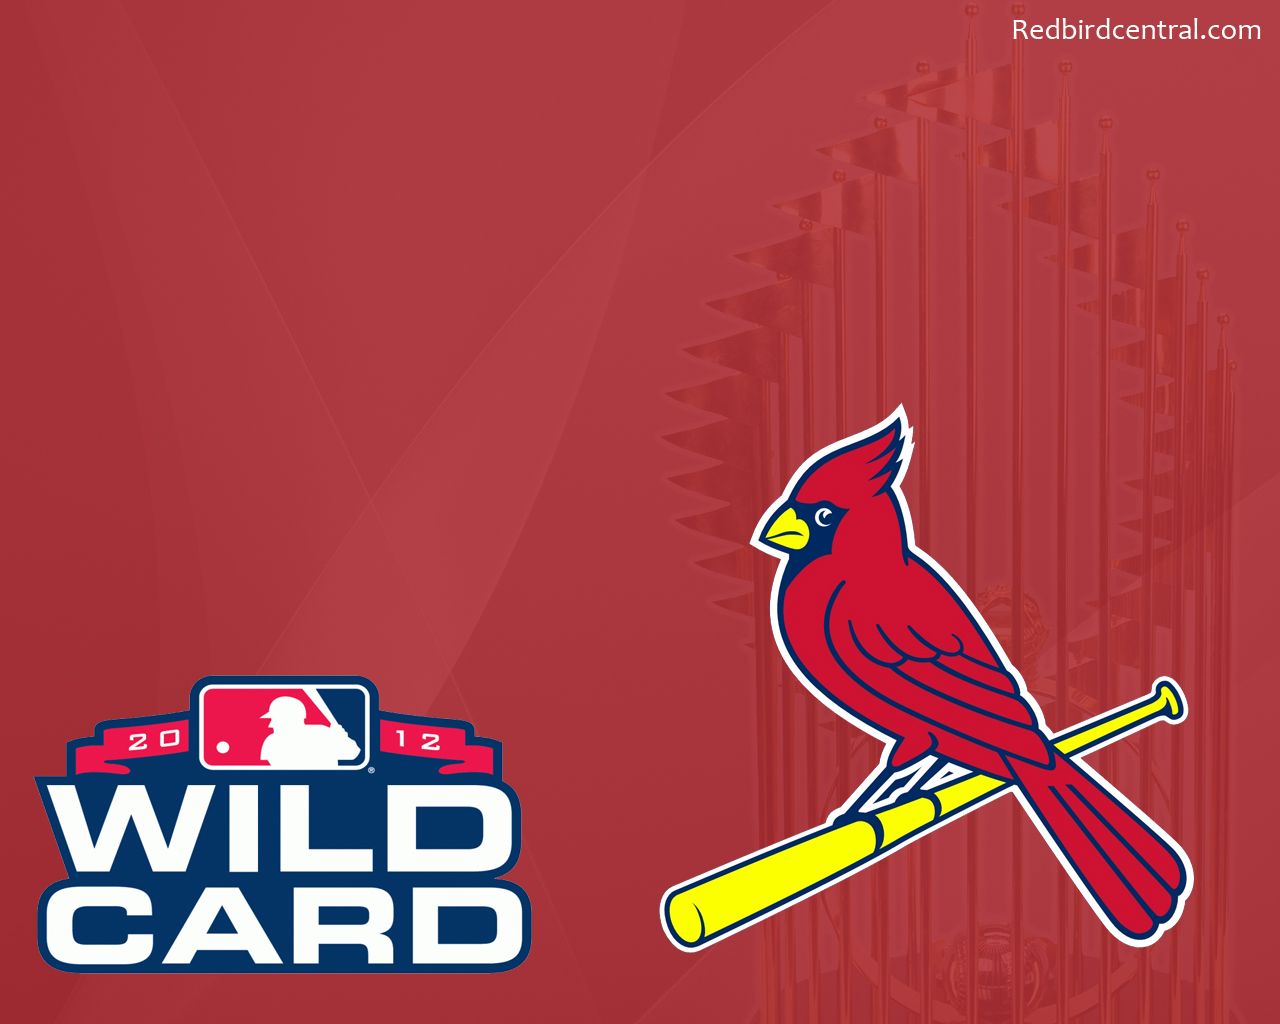 RedbirdCentral.com - St. Louis Cardinals Wallpaper - 2012 Wild ...